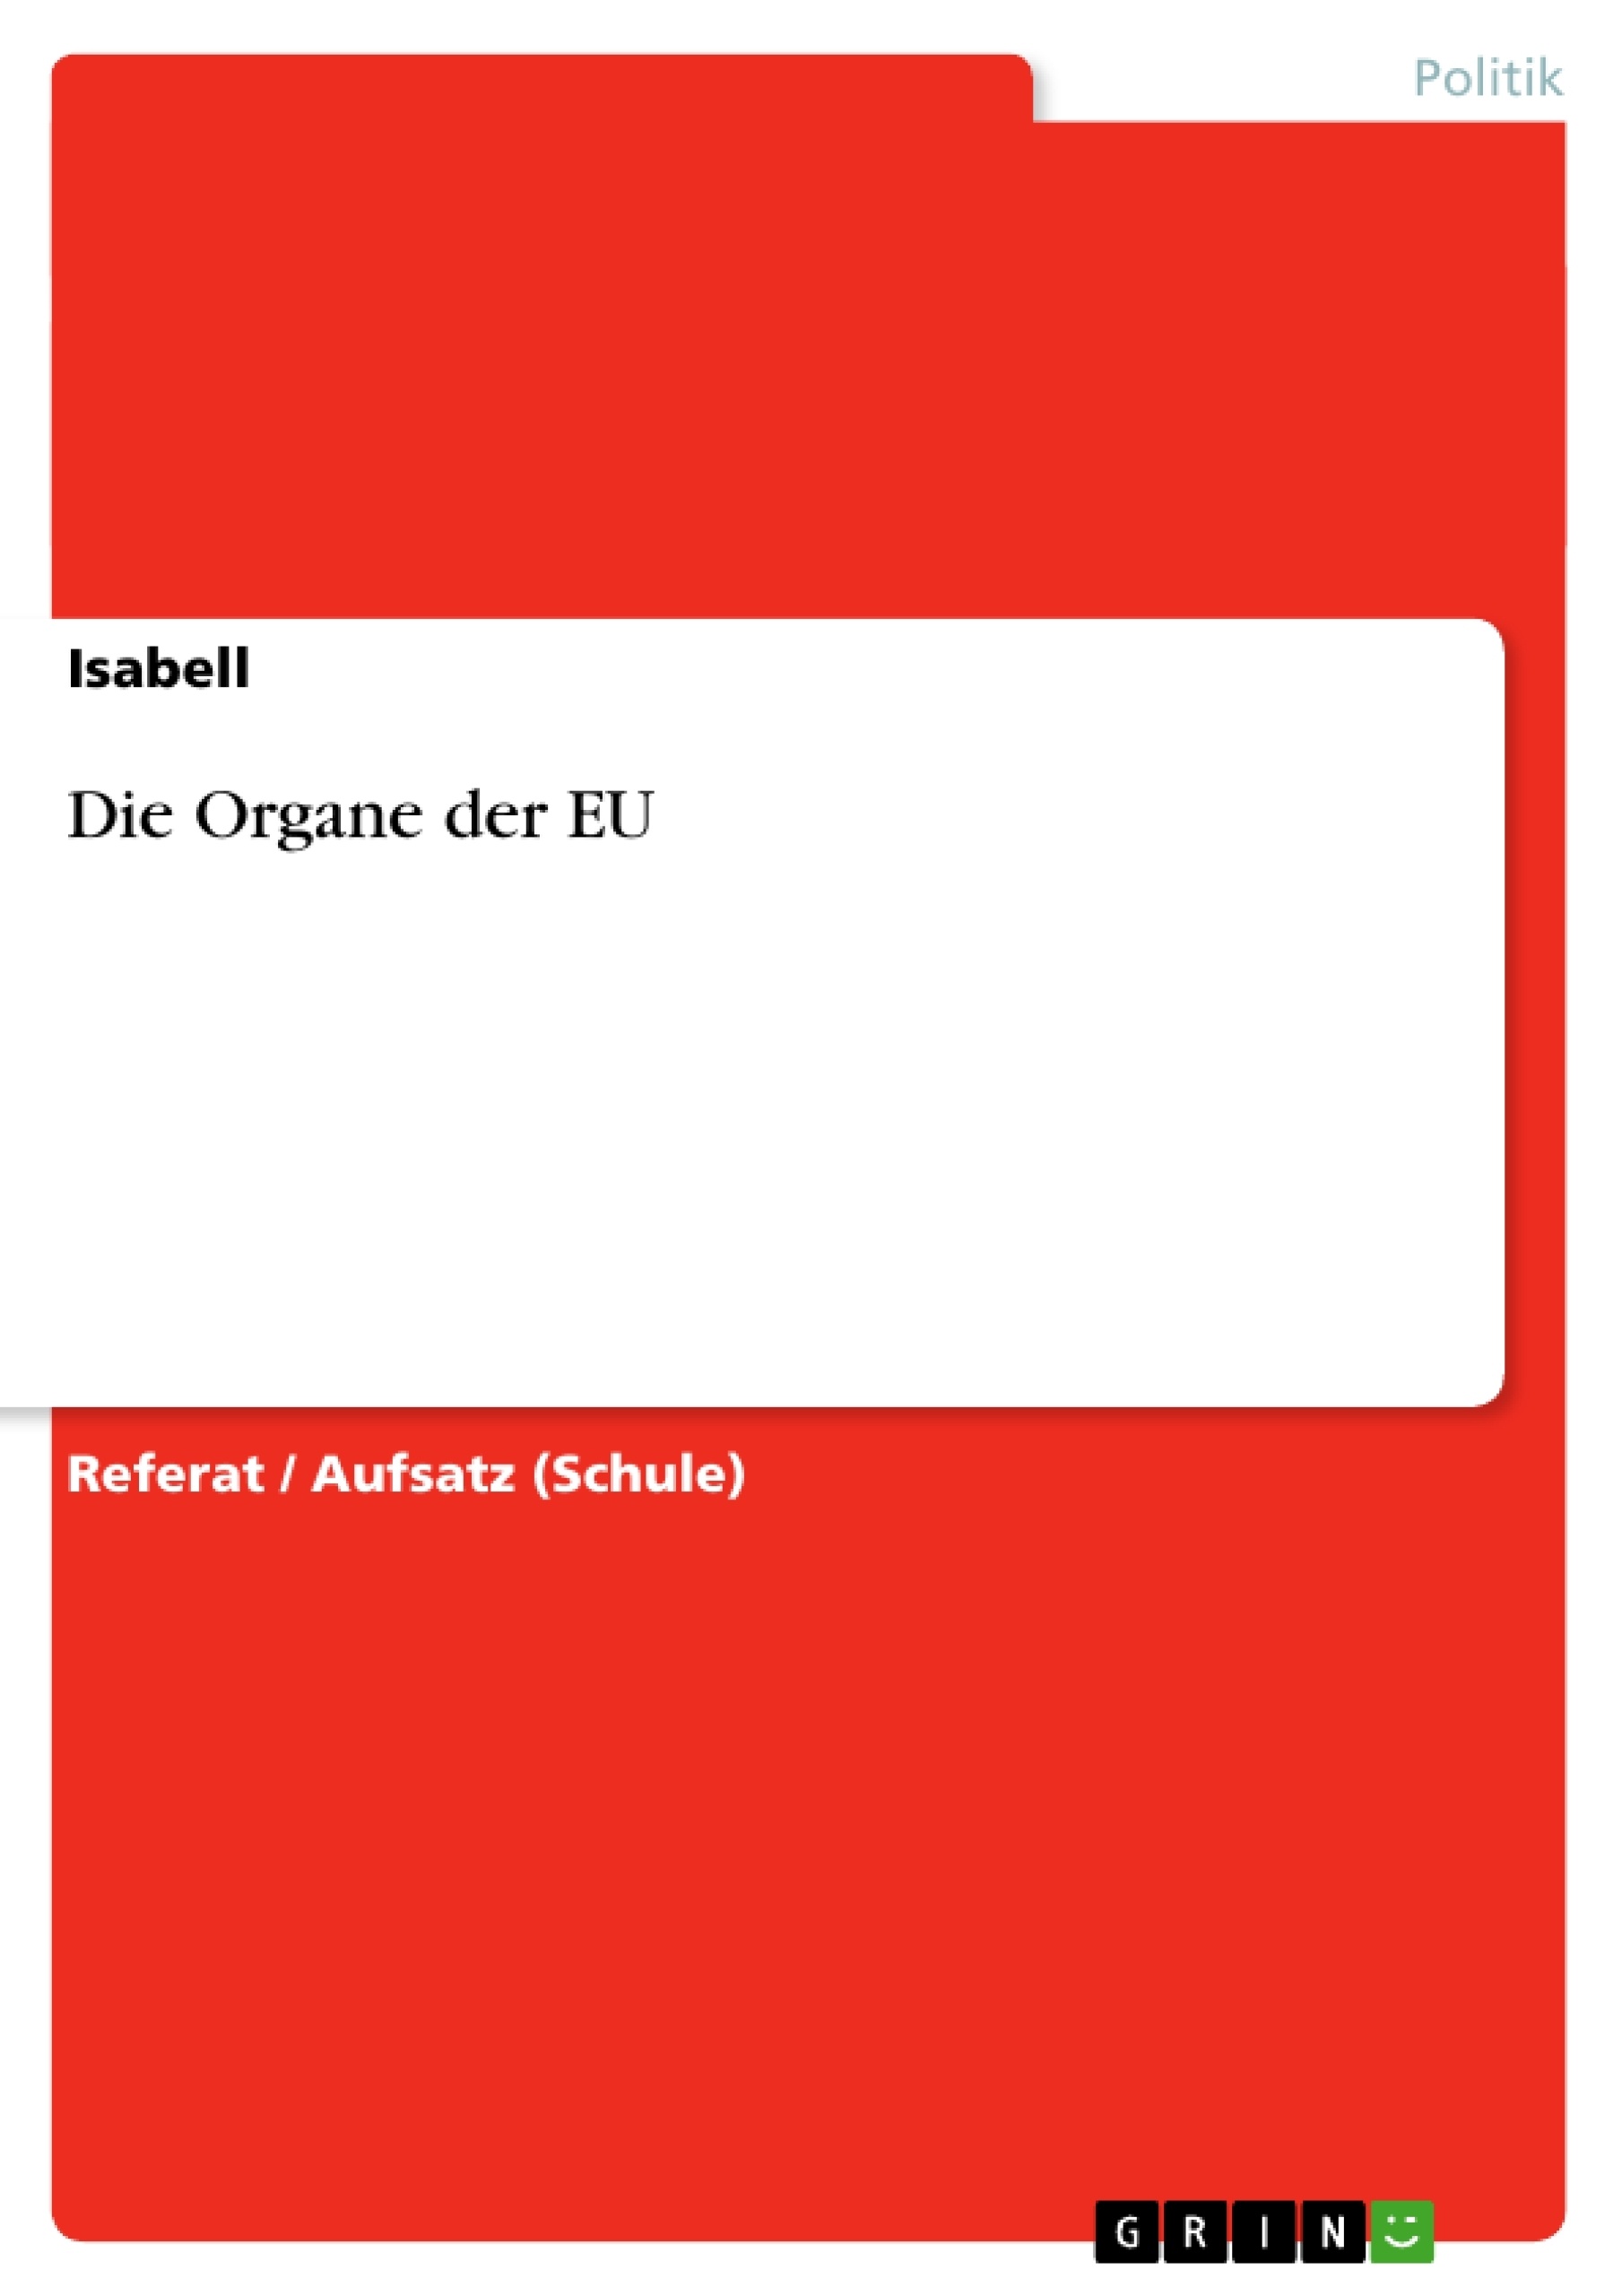 Title: Die Organe der EU